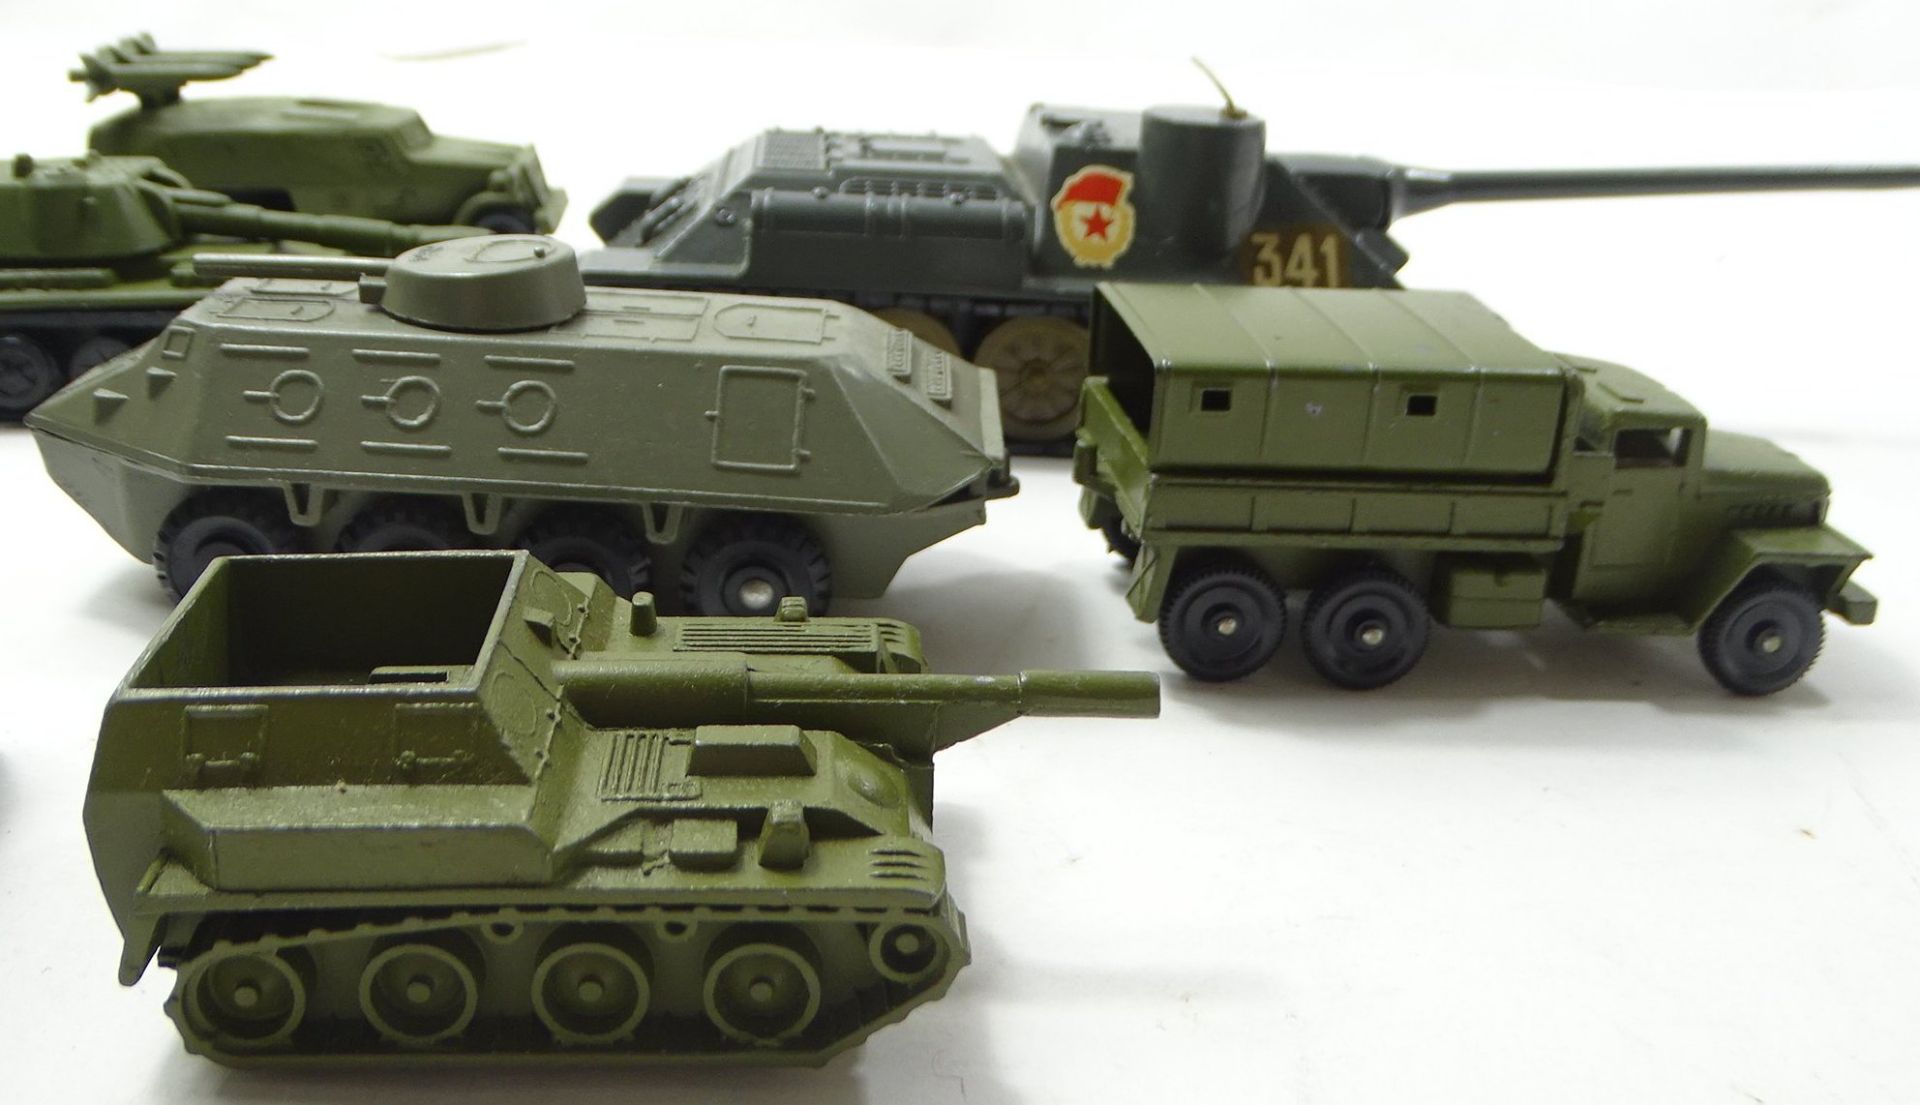 12 Panzer- bzw. Militärfahrzeugmodelle, Metall, größter Panzer: L. 23 cm, B. 7 cm, mit Altersspuren - Bild 3 aus 6